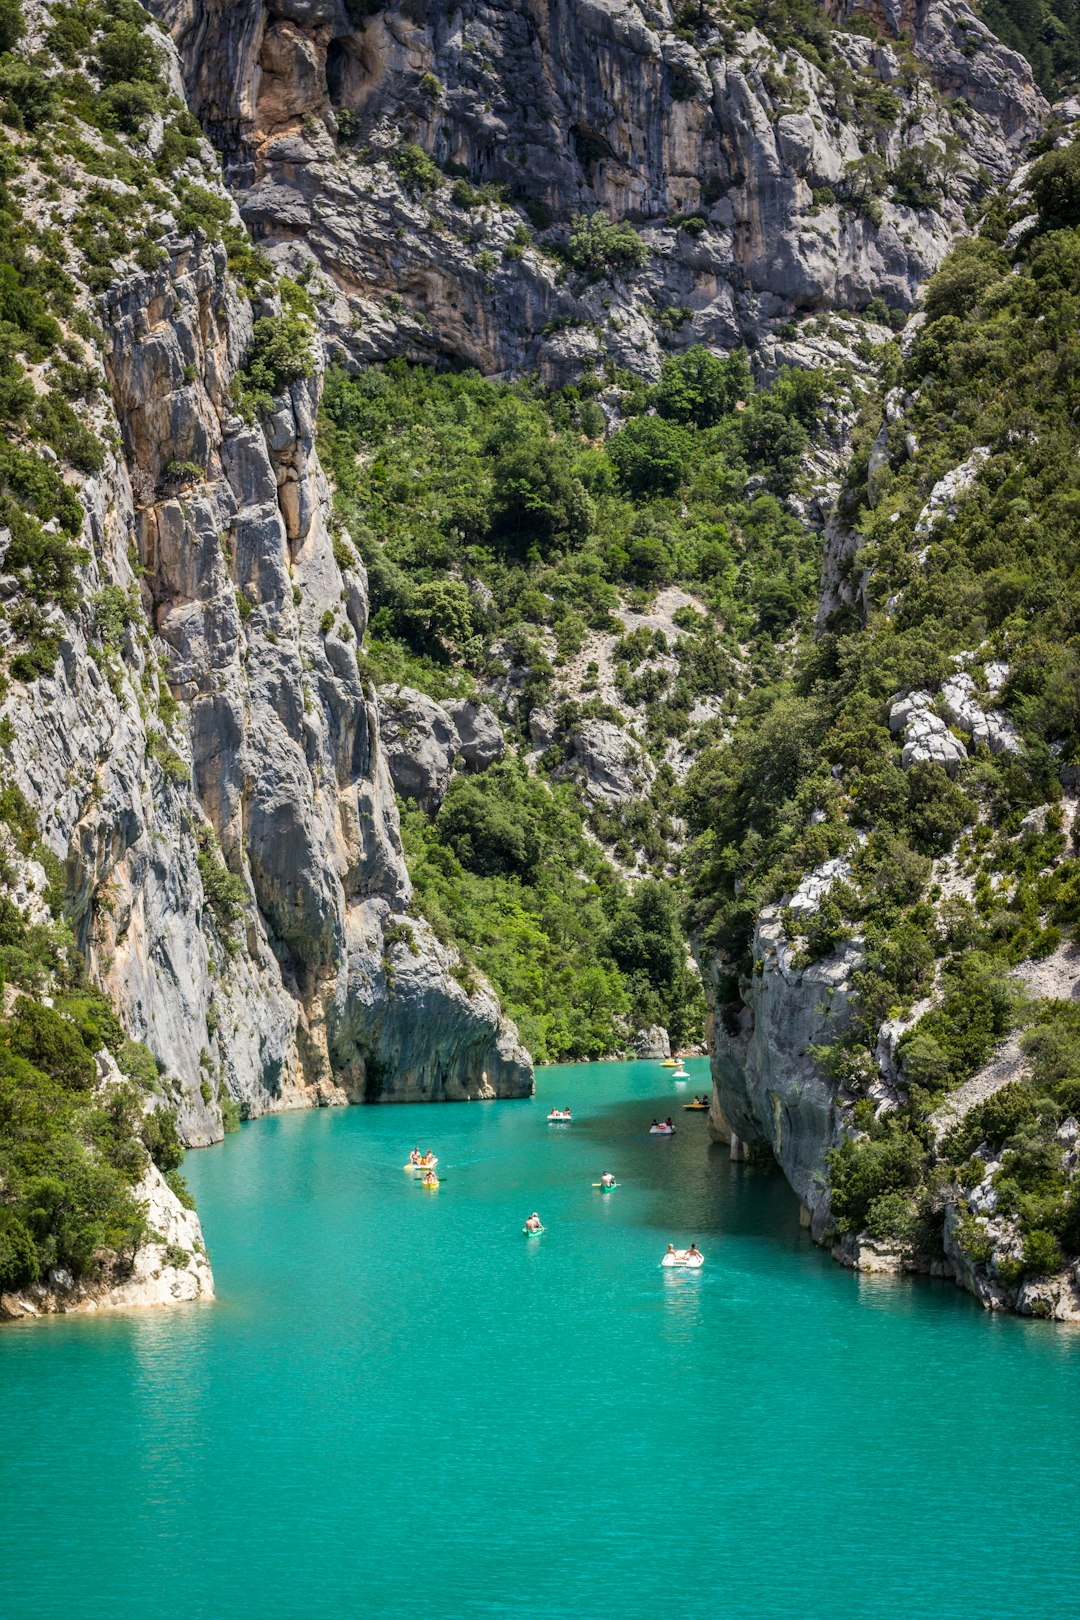 Nature reserve photo spot Gorges du Verdon Alpes-de-Haute-Provence